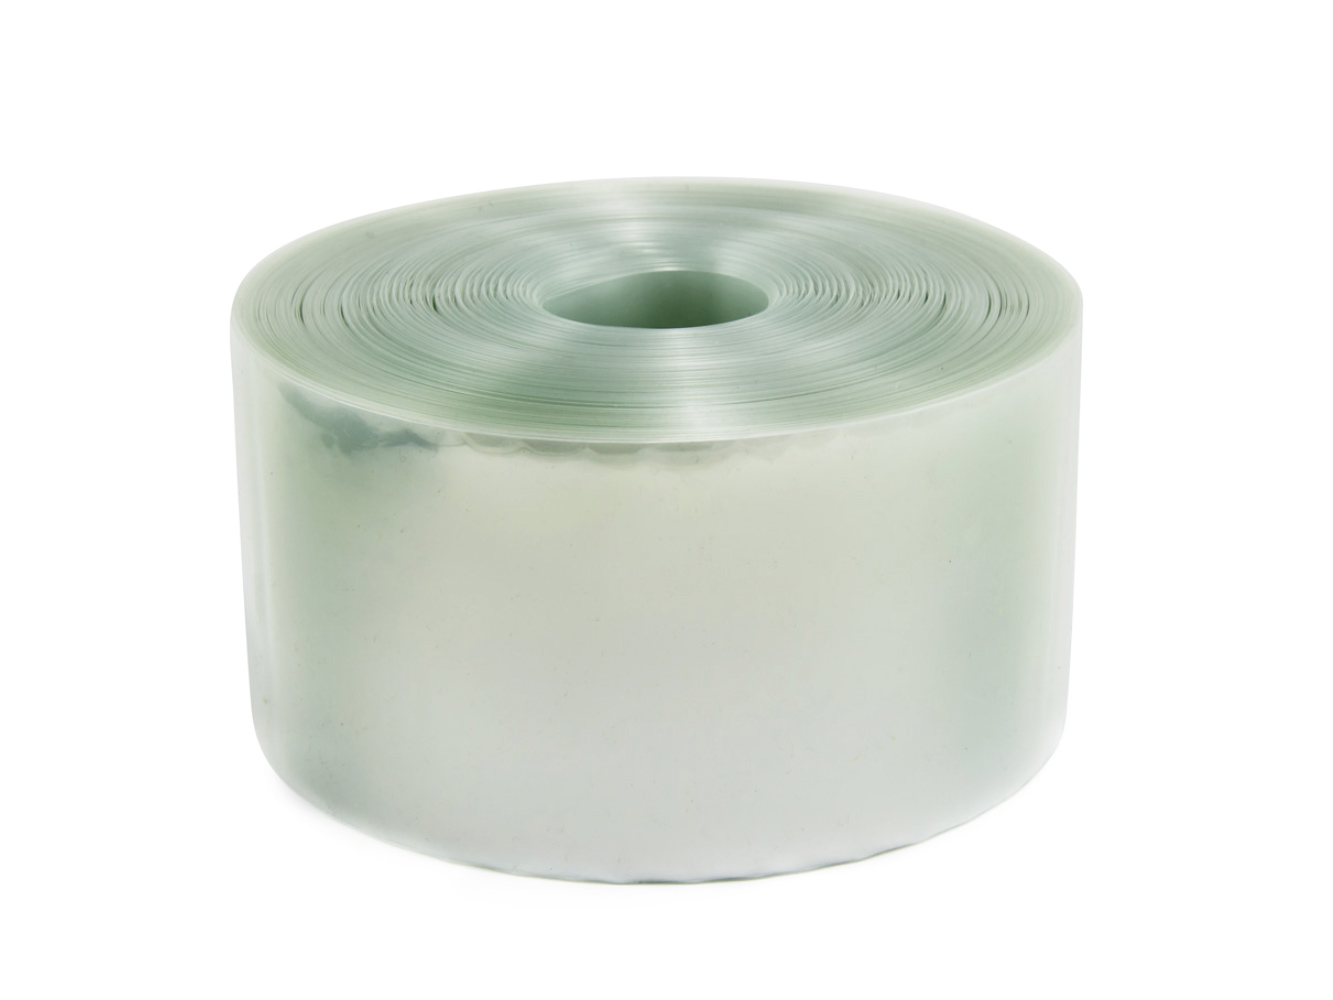 Transparentní smršťovací PVC fólie 2:1, šíře 110mm, průměr 70mm